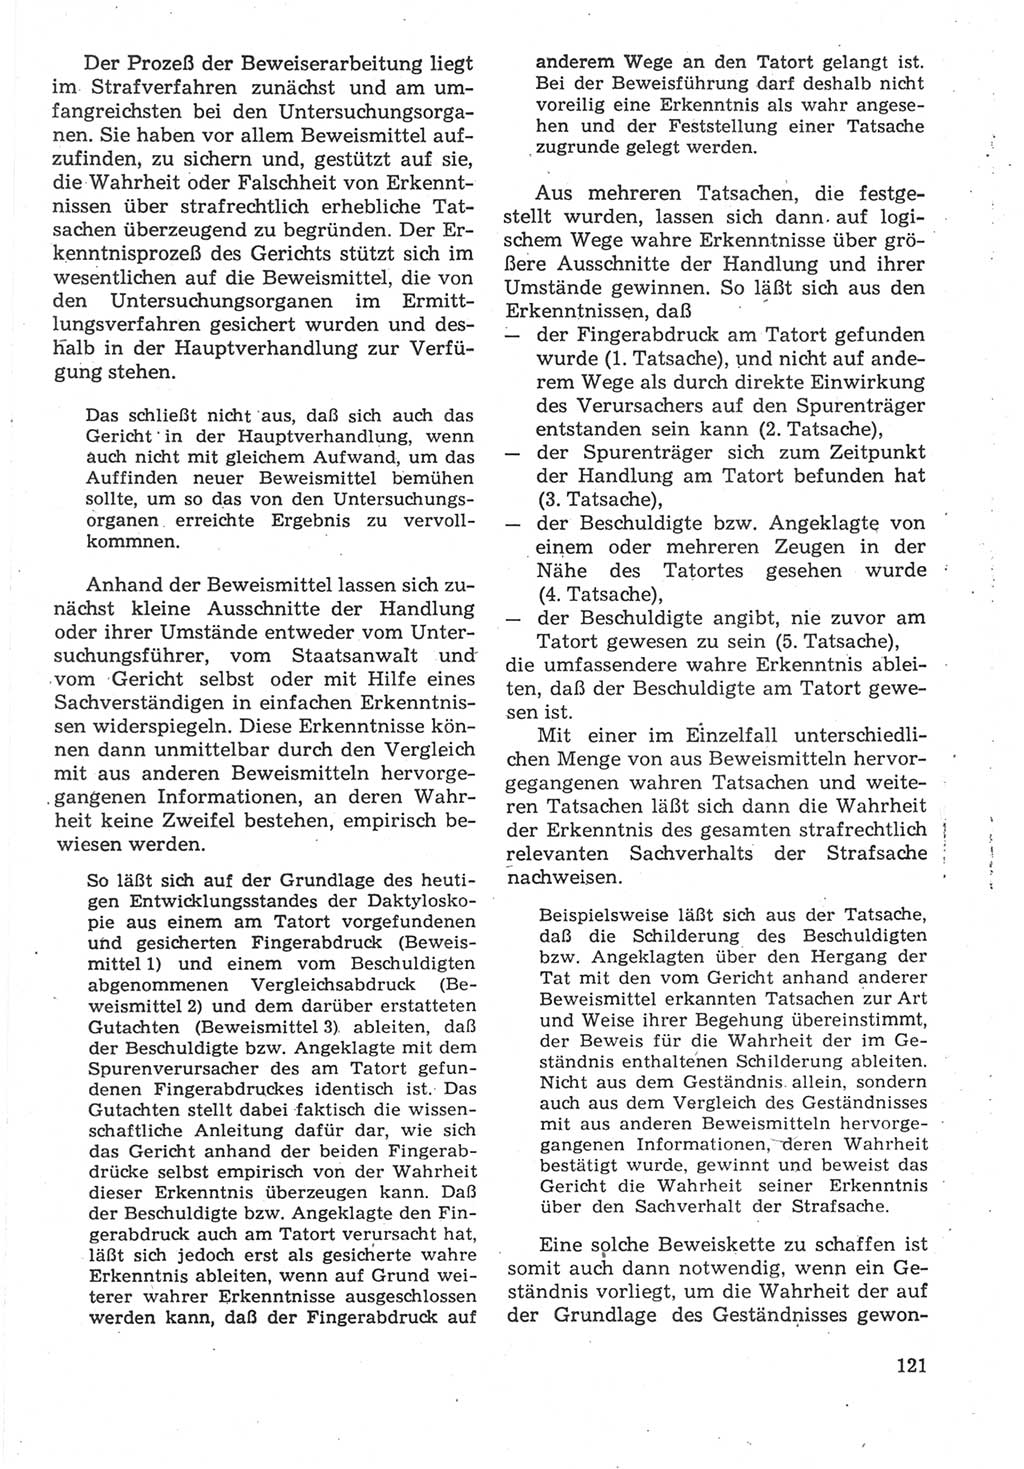 Strafverfahrensrecht [Deutsche Demokratische Republik (DDR)], Lehrbuch 1987, Seite 121 (Strafverf.-R. DDR Lb. 1987, S. 121)